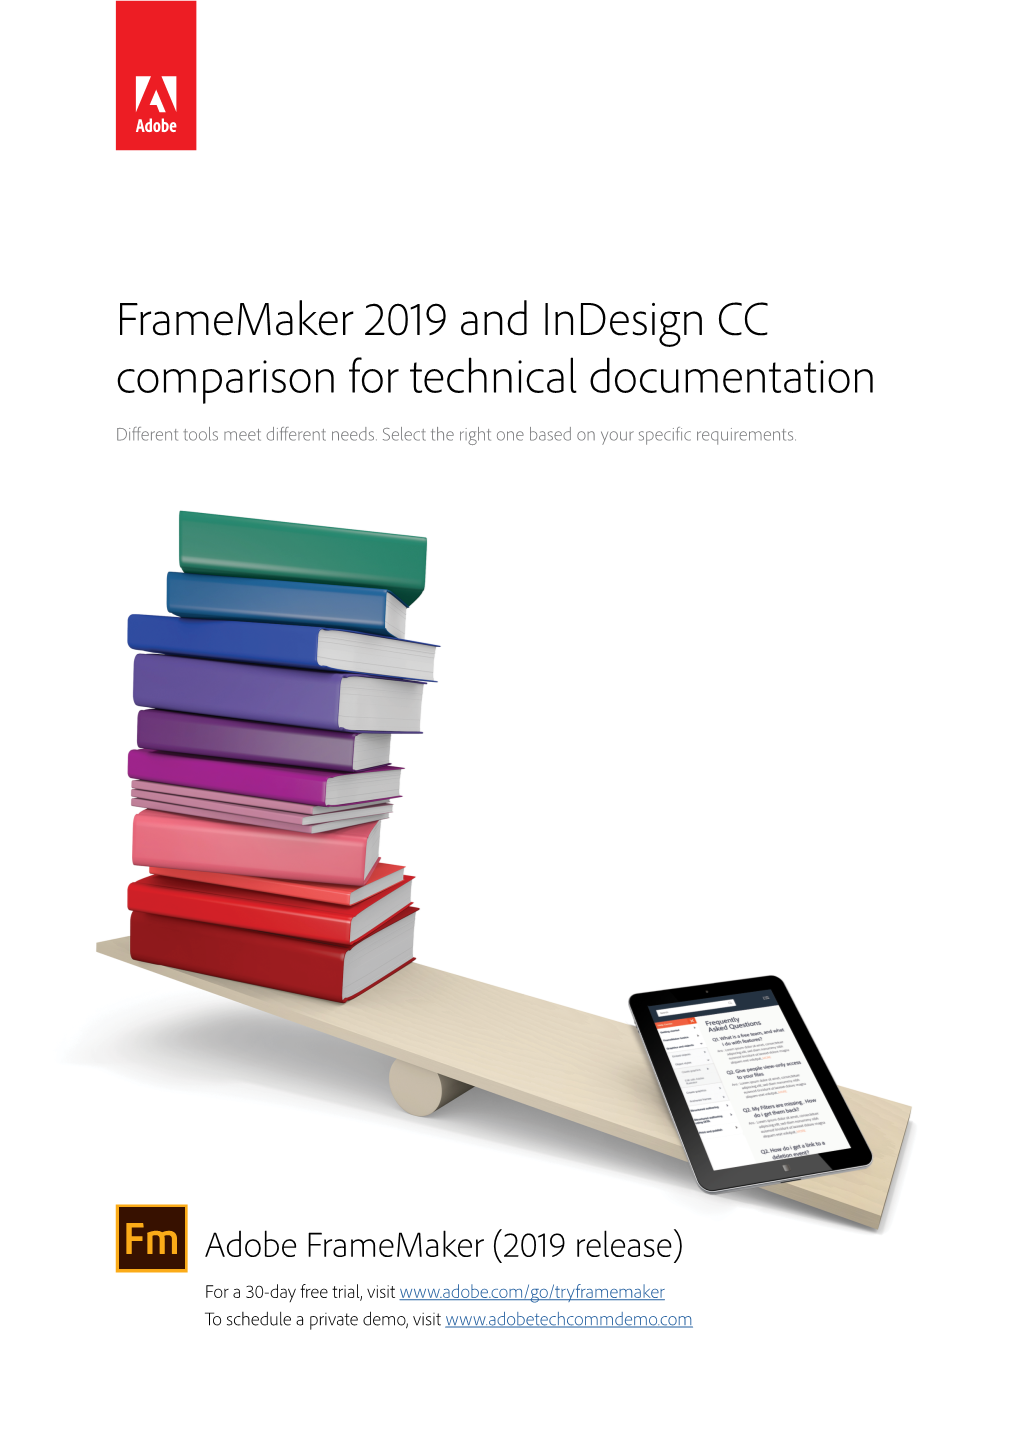 Adobe Framemaker (2019 Release)-For XML/DITA Authoring